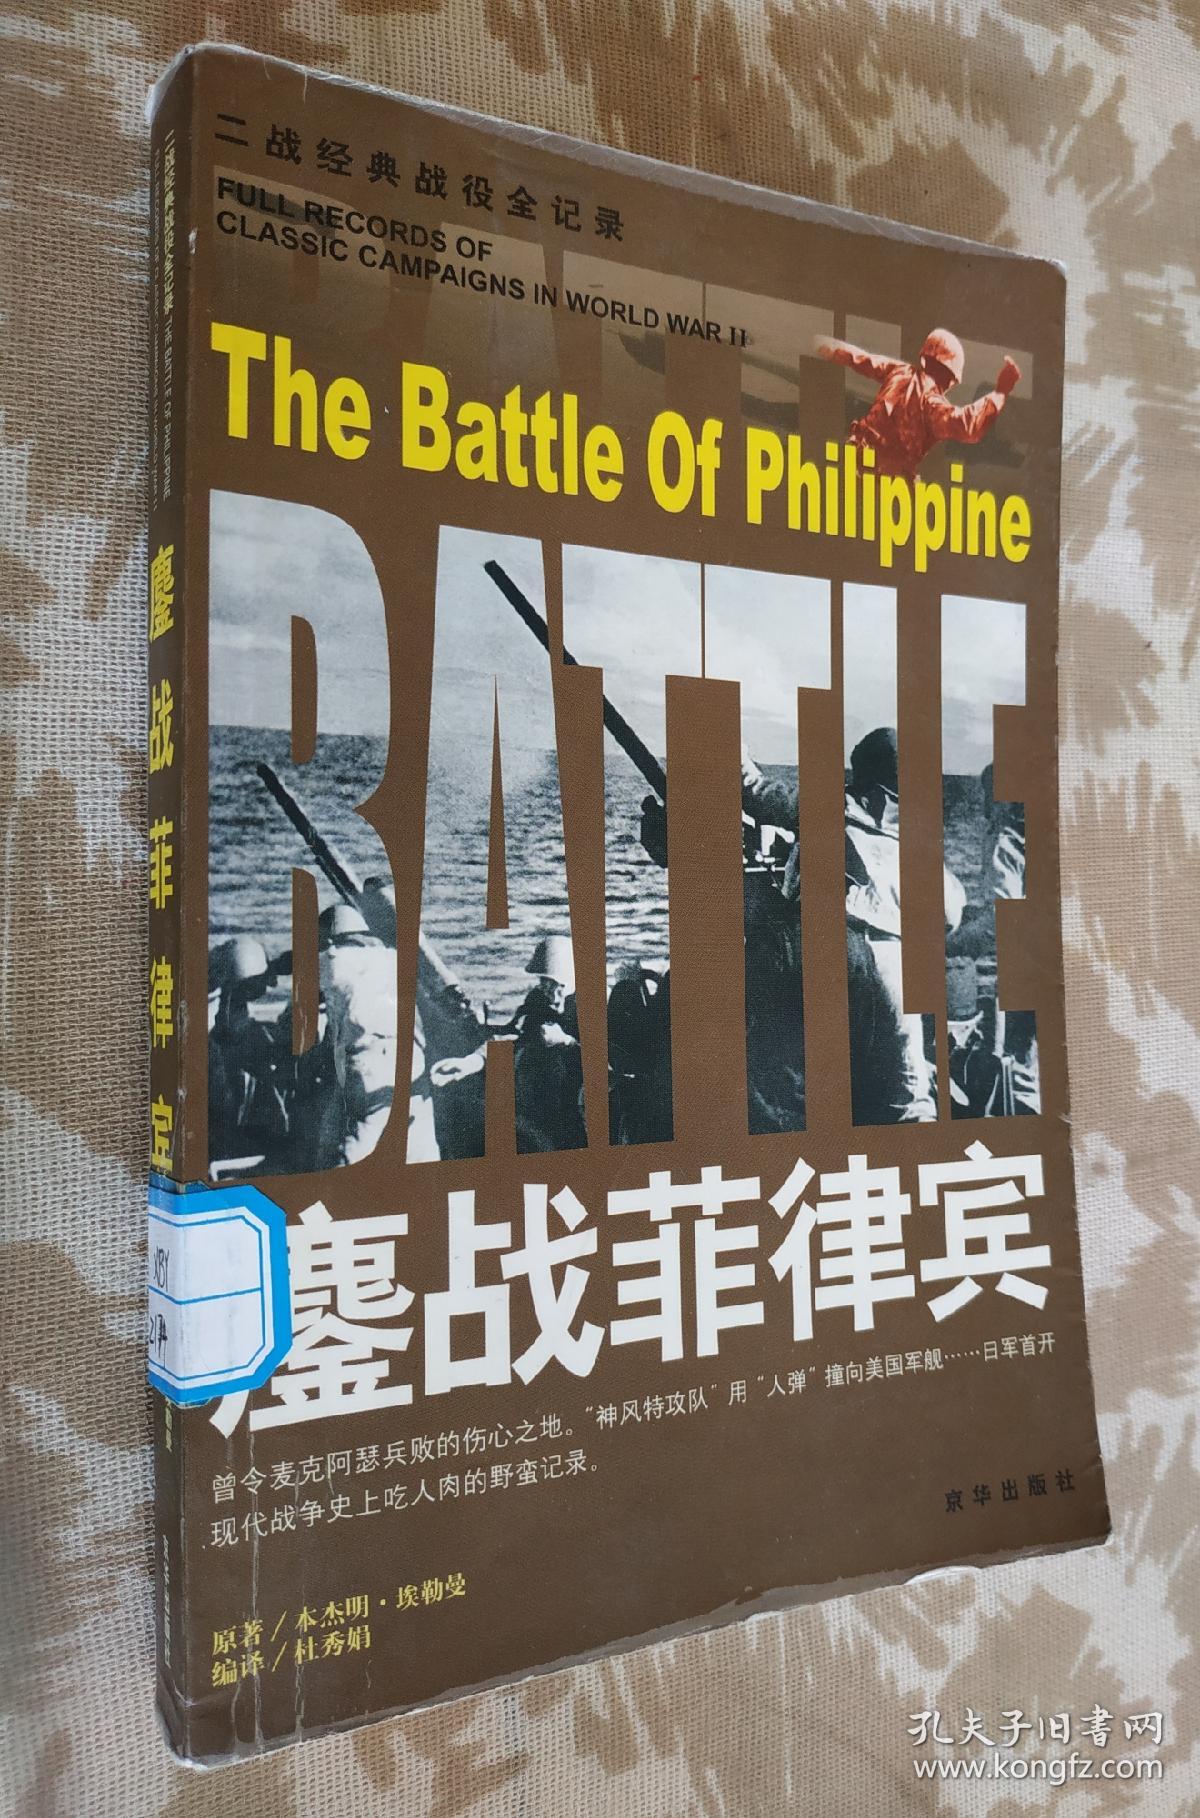 鏖战菲律宾。（二战经典战役全记录）。w5。